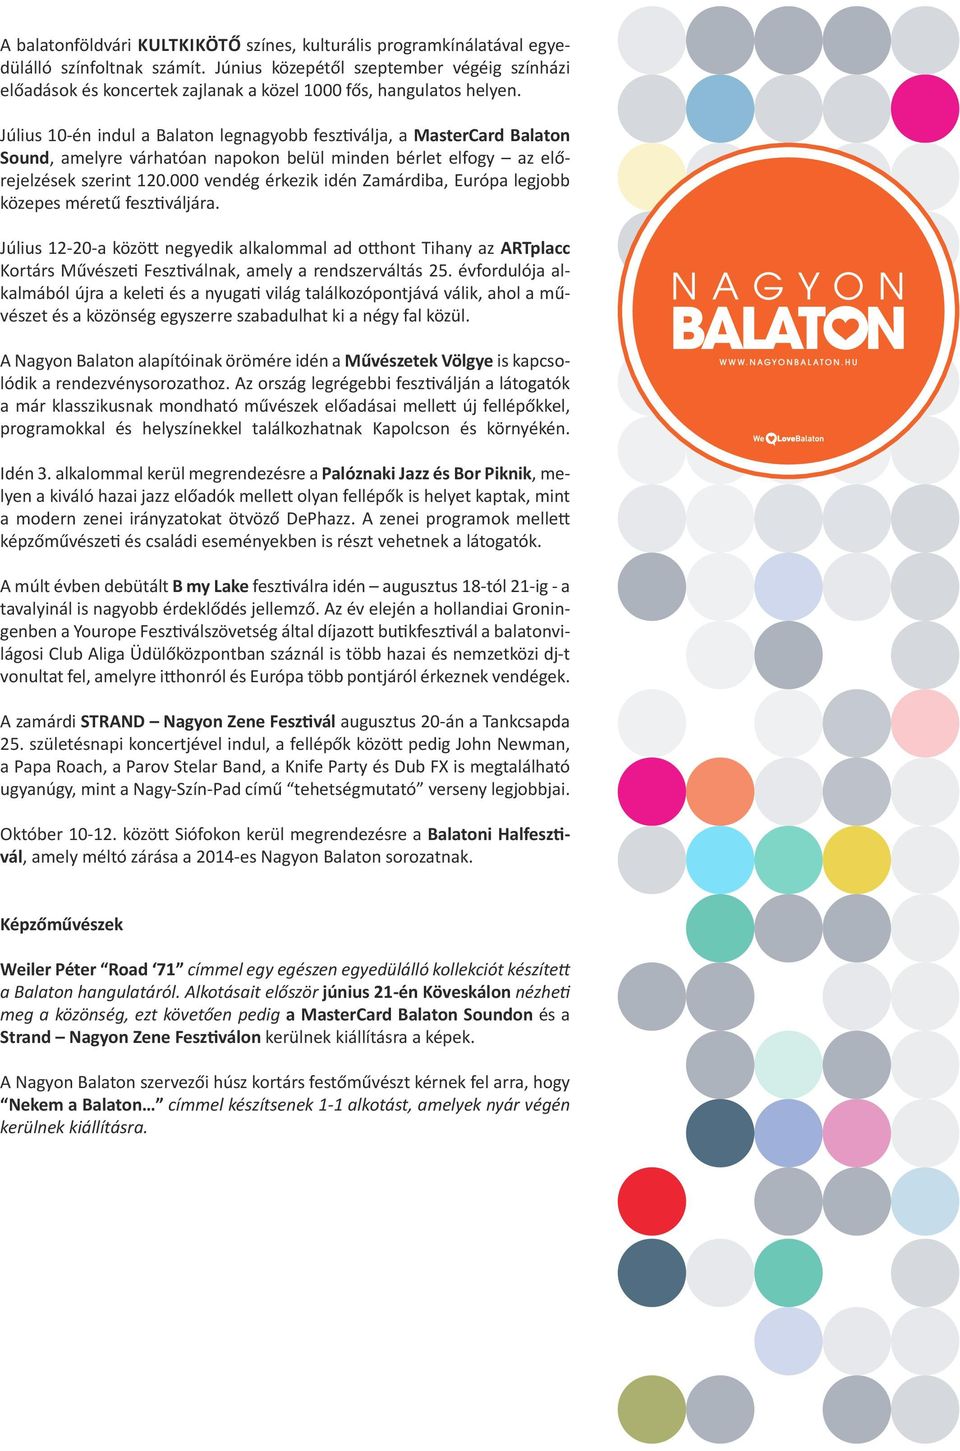 Július 10-én indul a Balaton legnagyobb fesztiválja, a MasterCard Balaton Sound, amelyre várhatóan napokon belül minden bérlet elfogy az előrejelzések szerint 120.